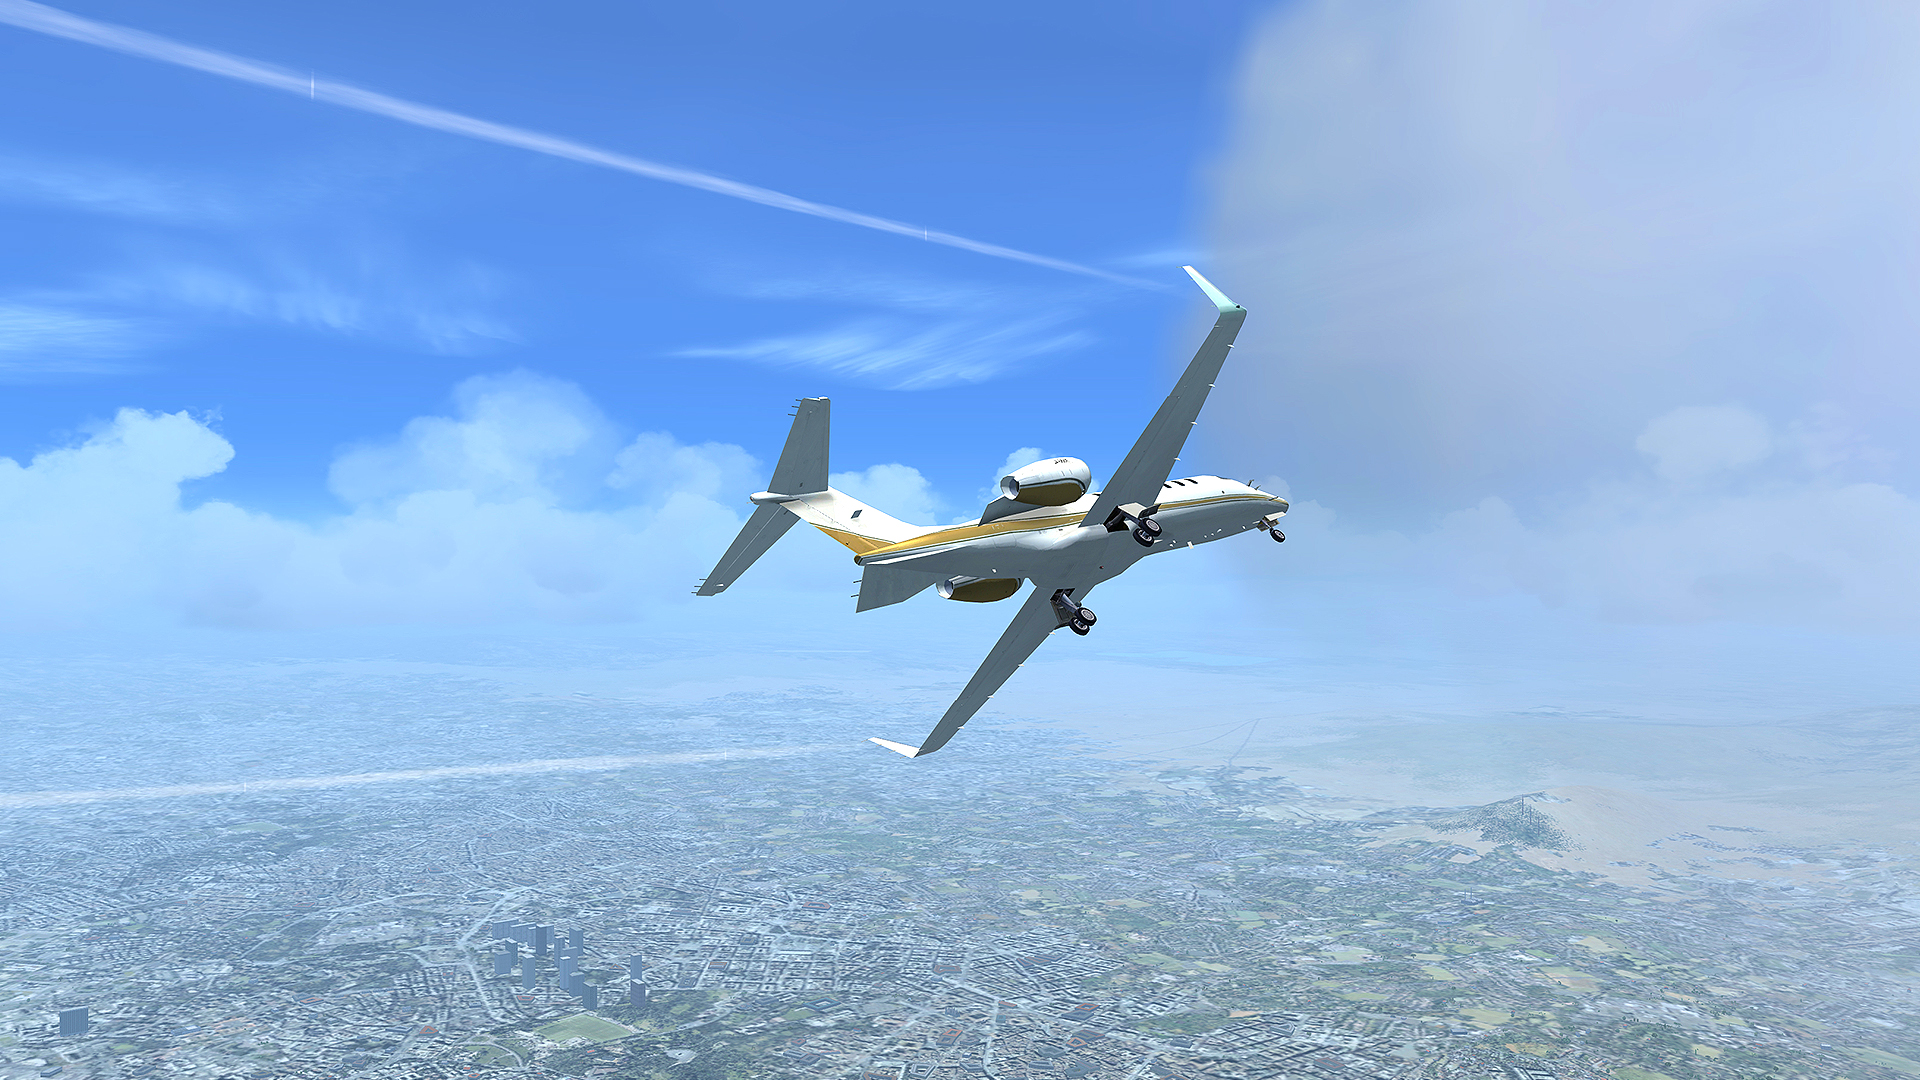 微软飞行模拟X